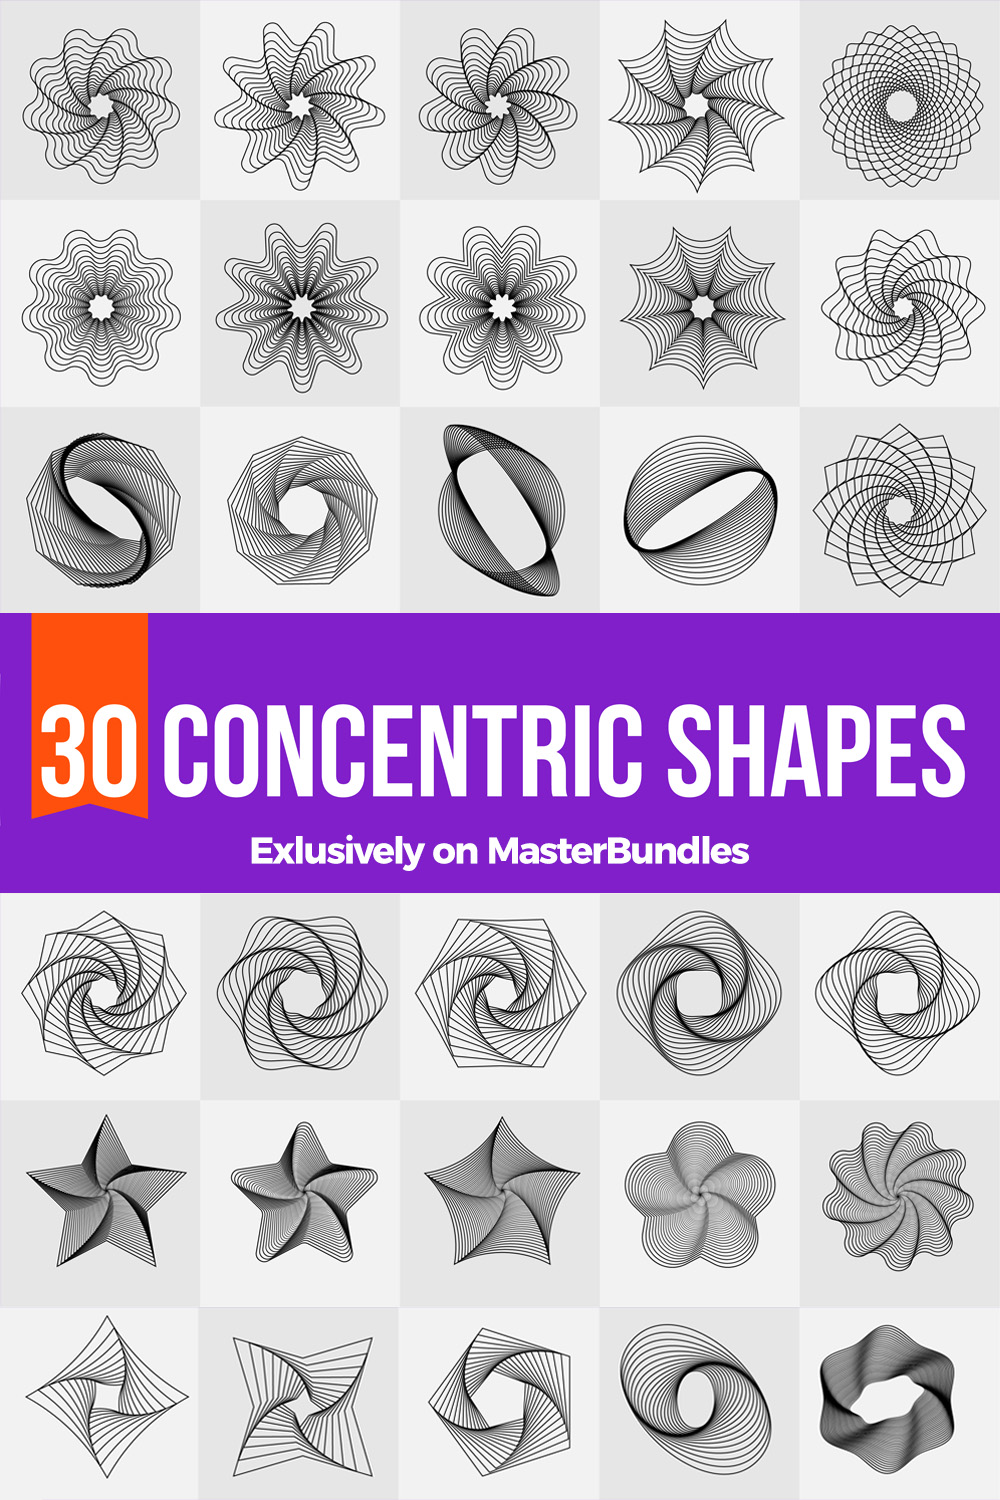 Concentric Shapes Bundle pinteres image.